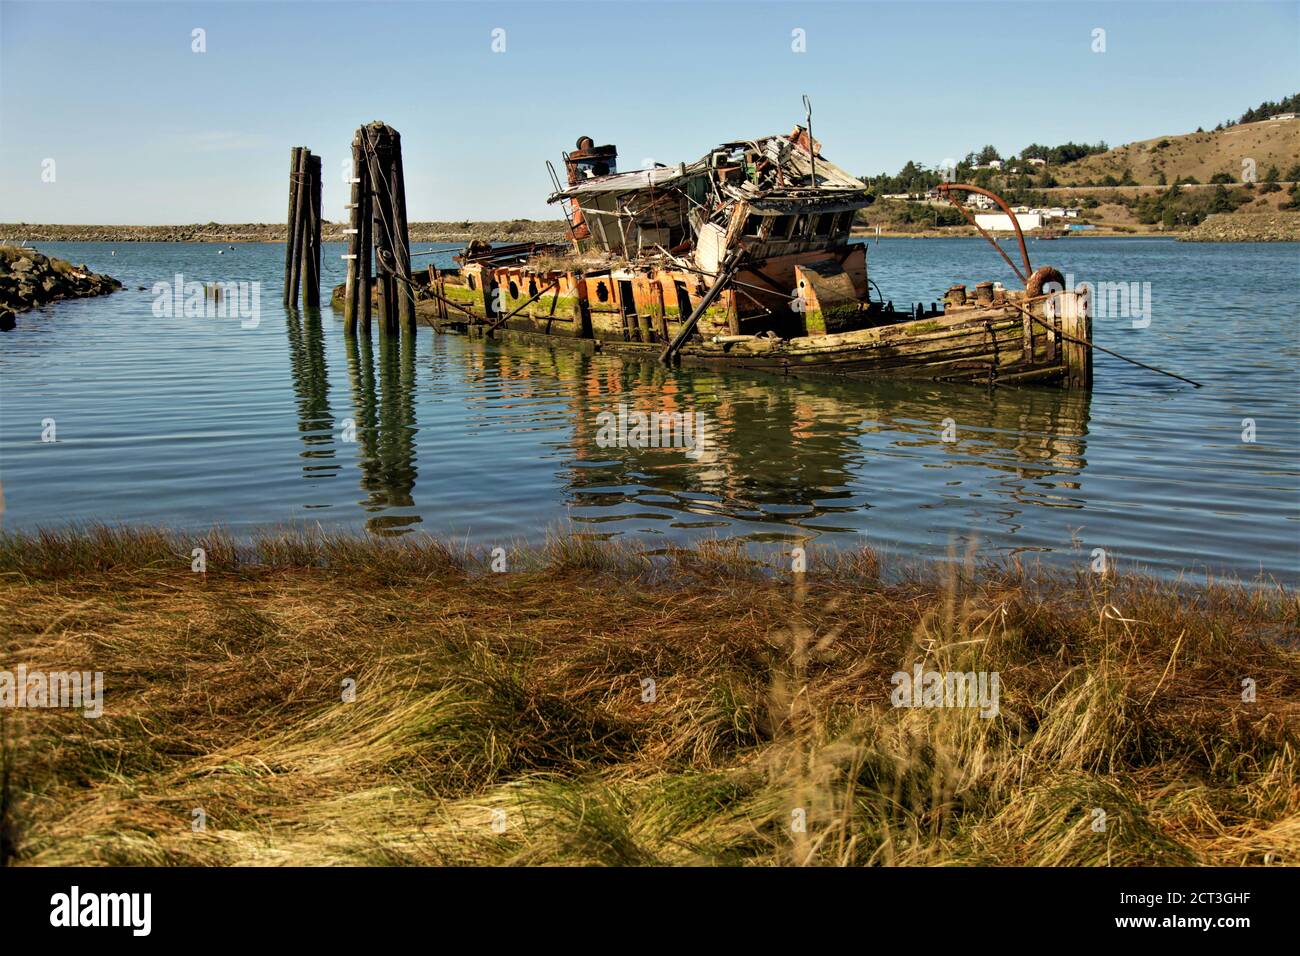 Barco de pesca hundido y descomponido en la costa sur de Oregón Foto de stock